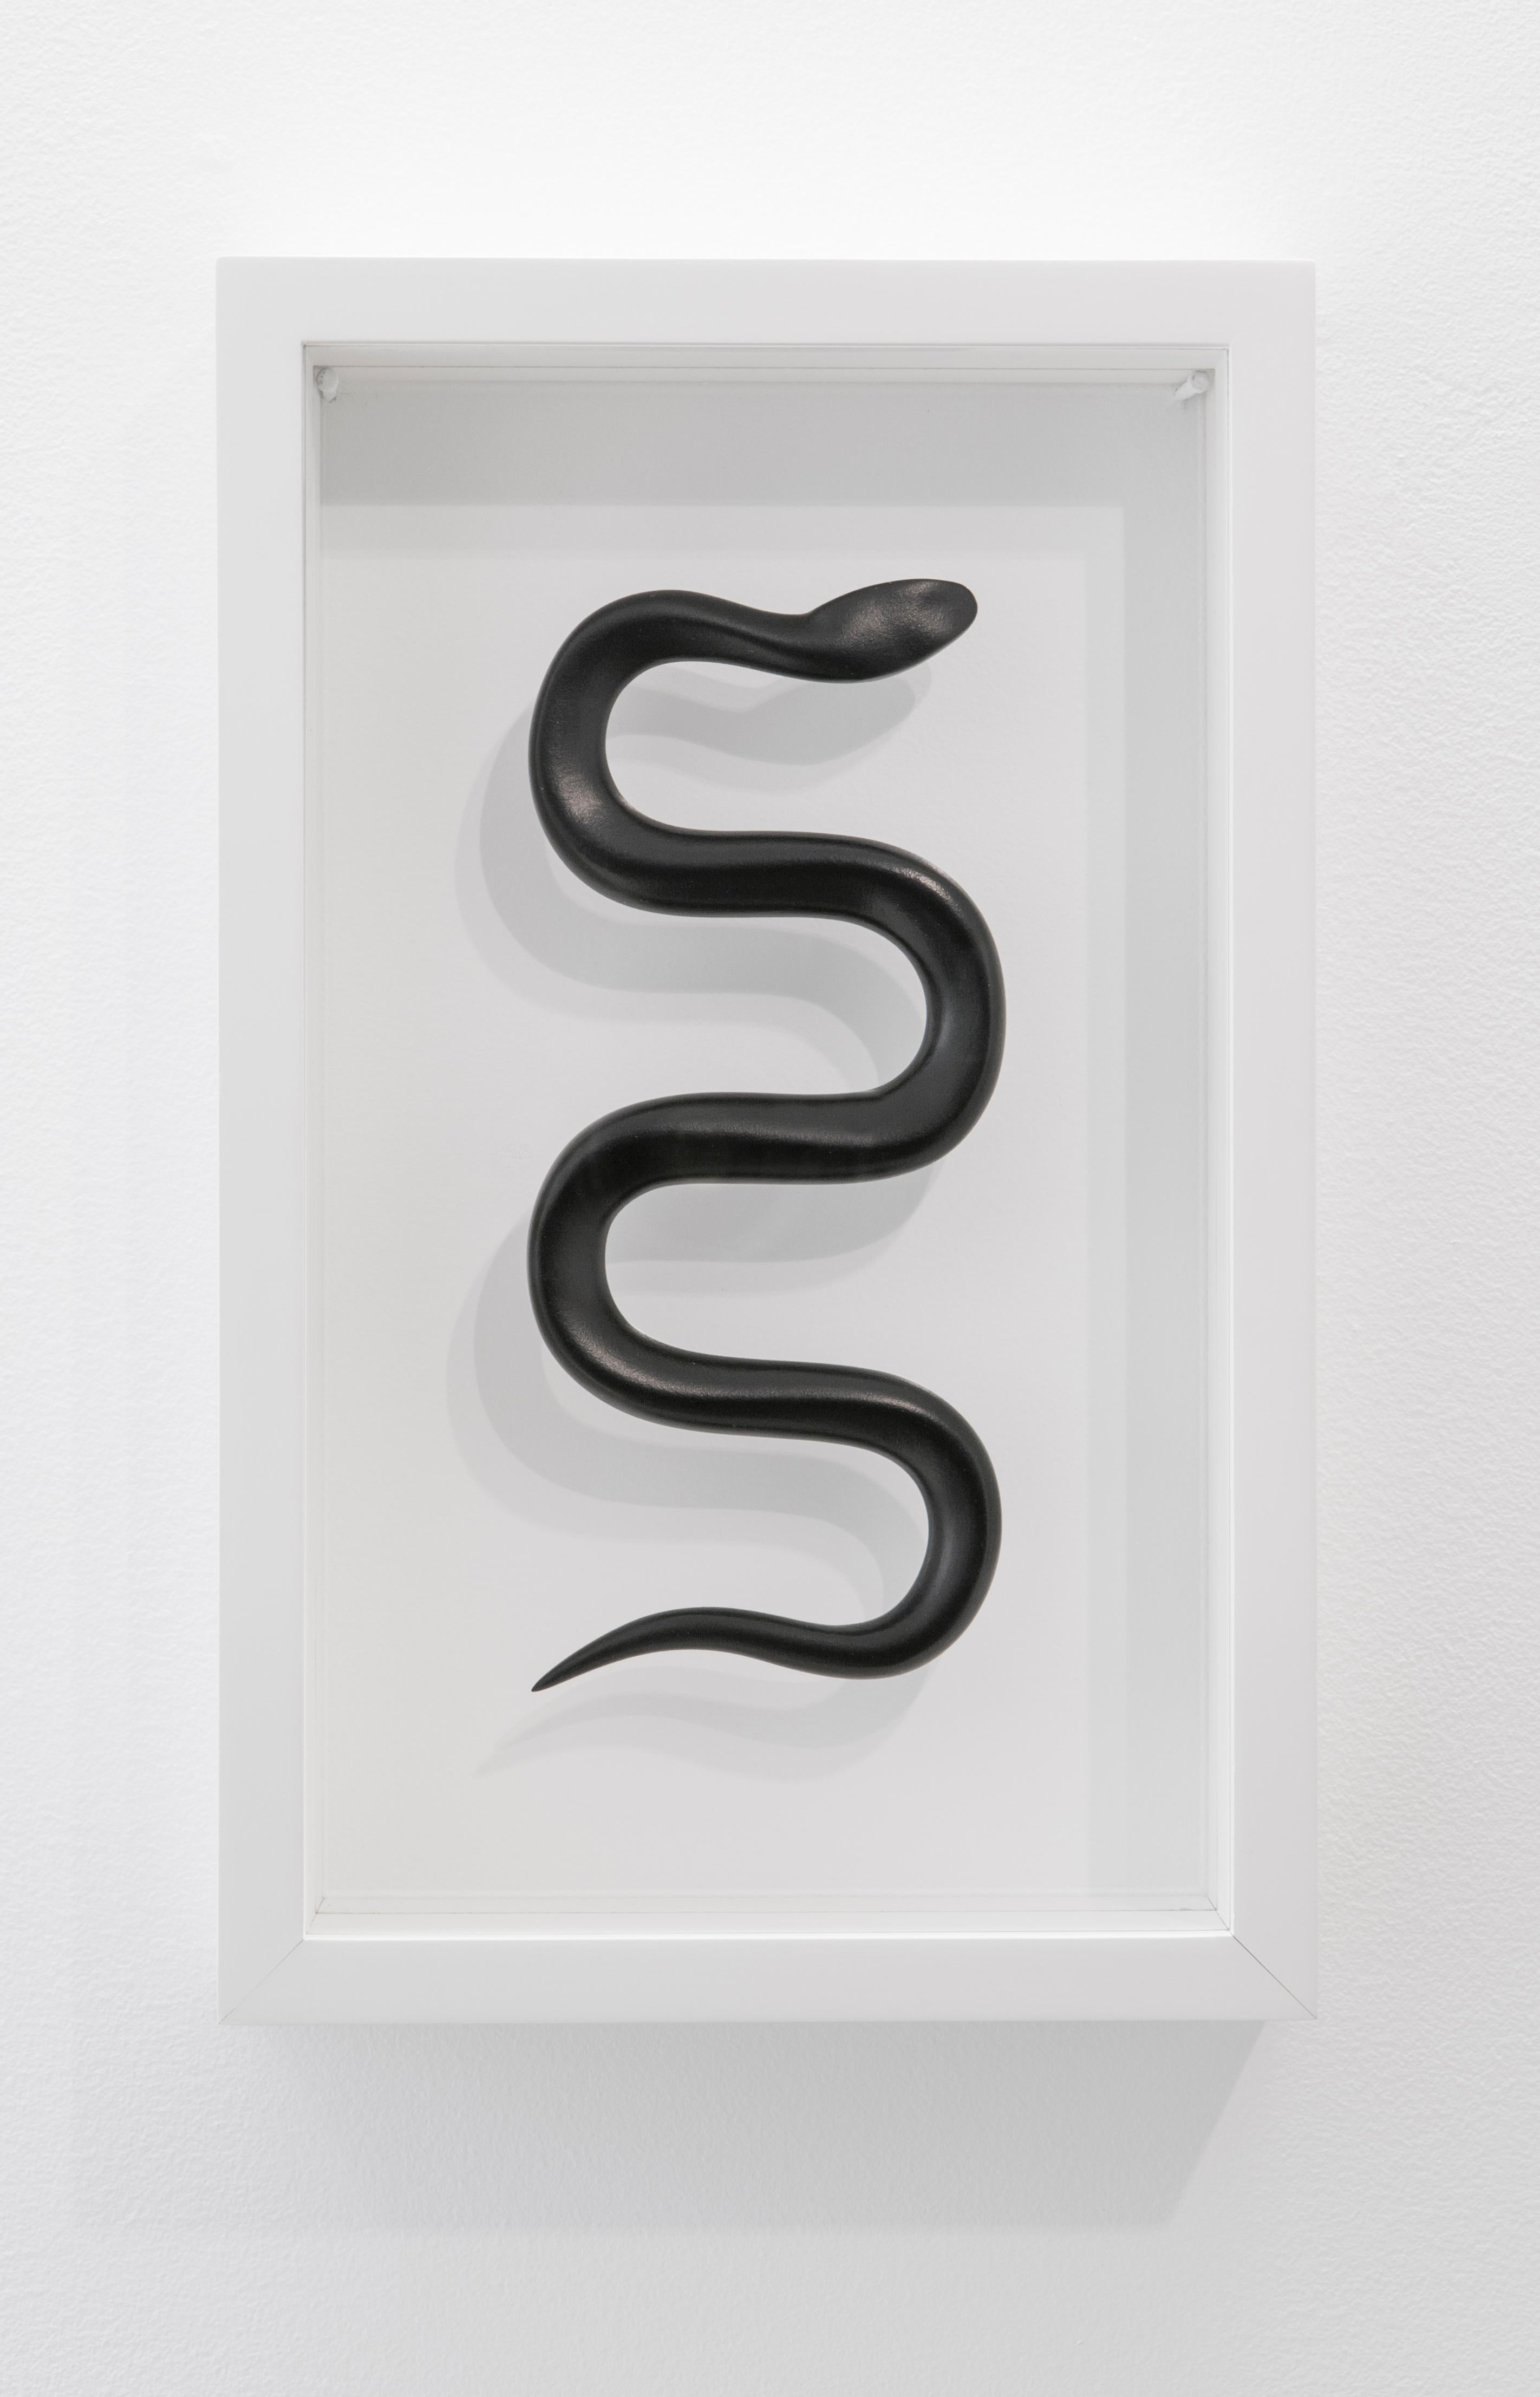 Schlange/Snake - Contemporain Sculpture par Katharina Fritsch